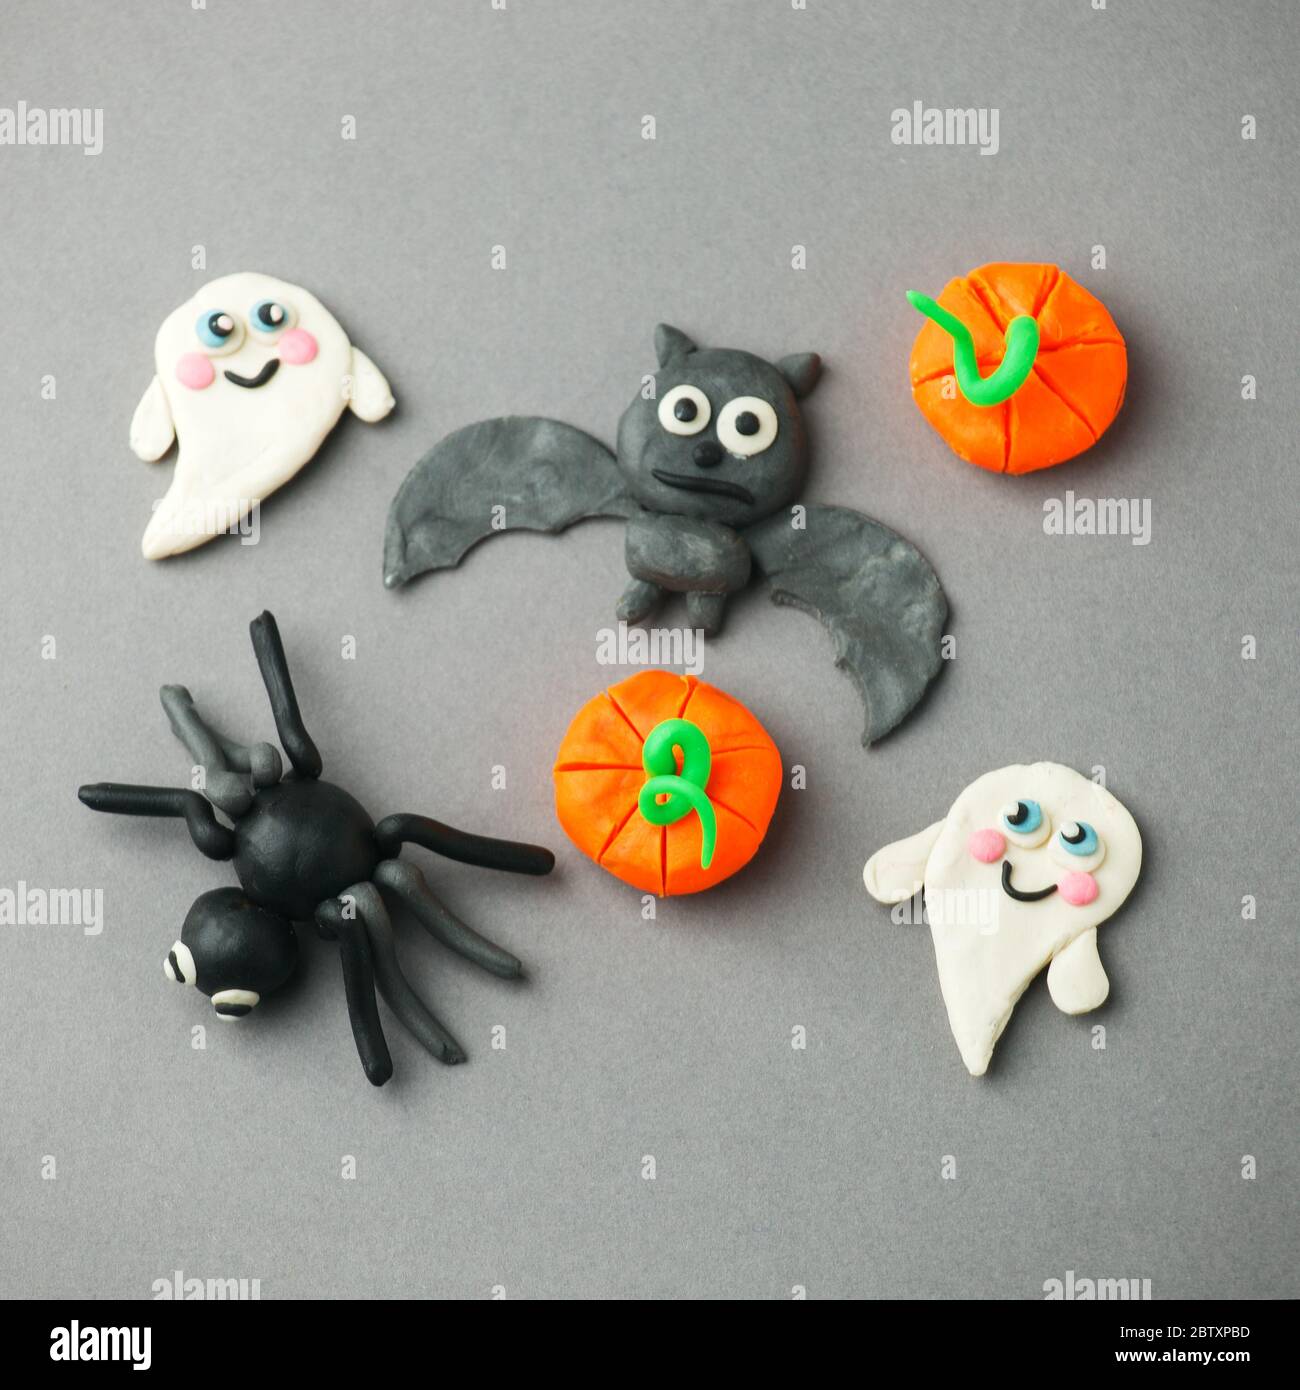 Handgemachtes Plastilin Set für den saisonalen Urlaub an Halloween und Herbsttagen - Geist, Kürbis, Spinne und Fledermaus, kreative DIY-Idee für Kinder Stockfoto